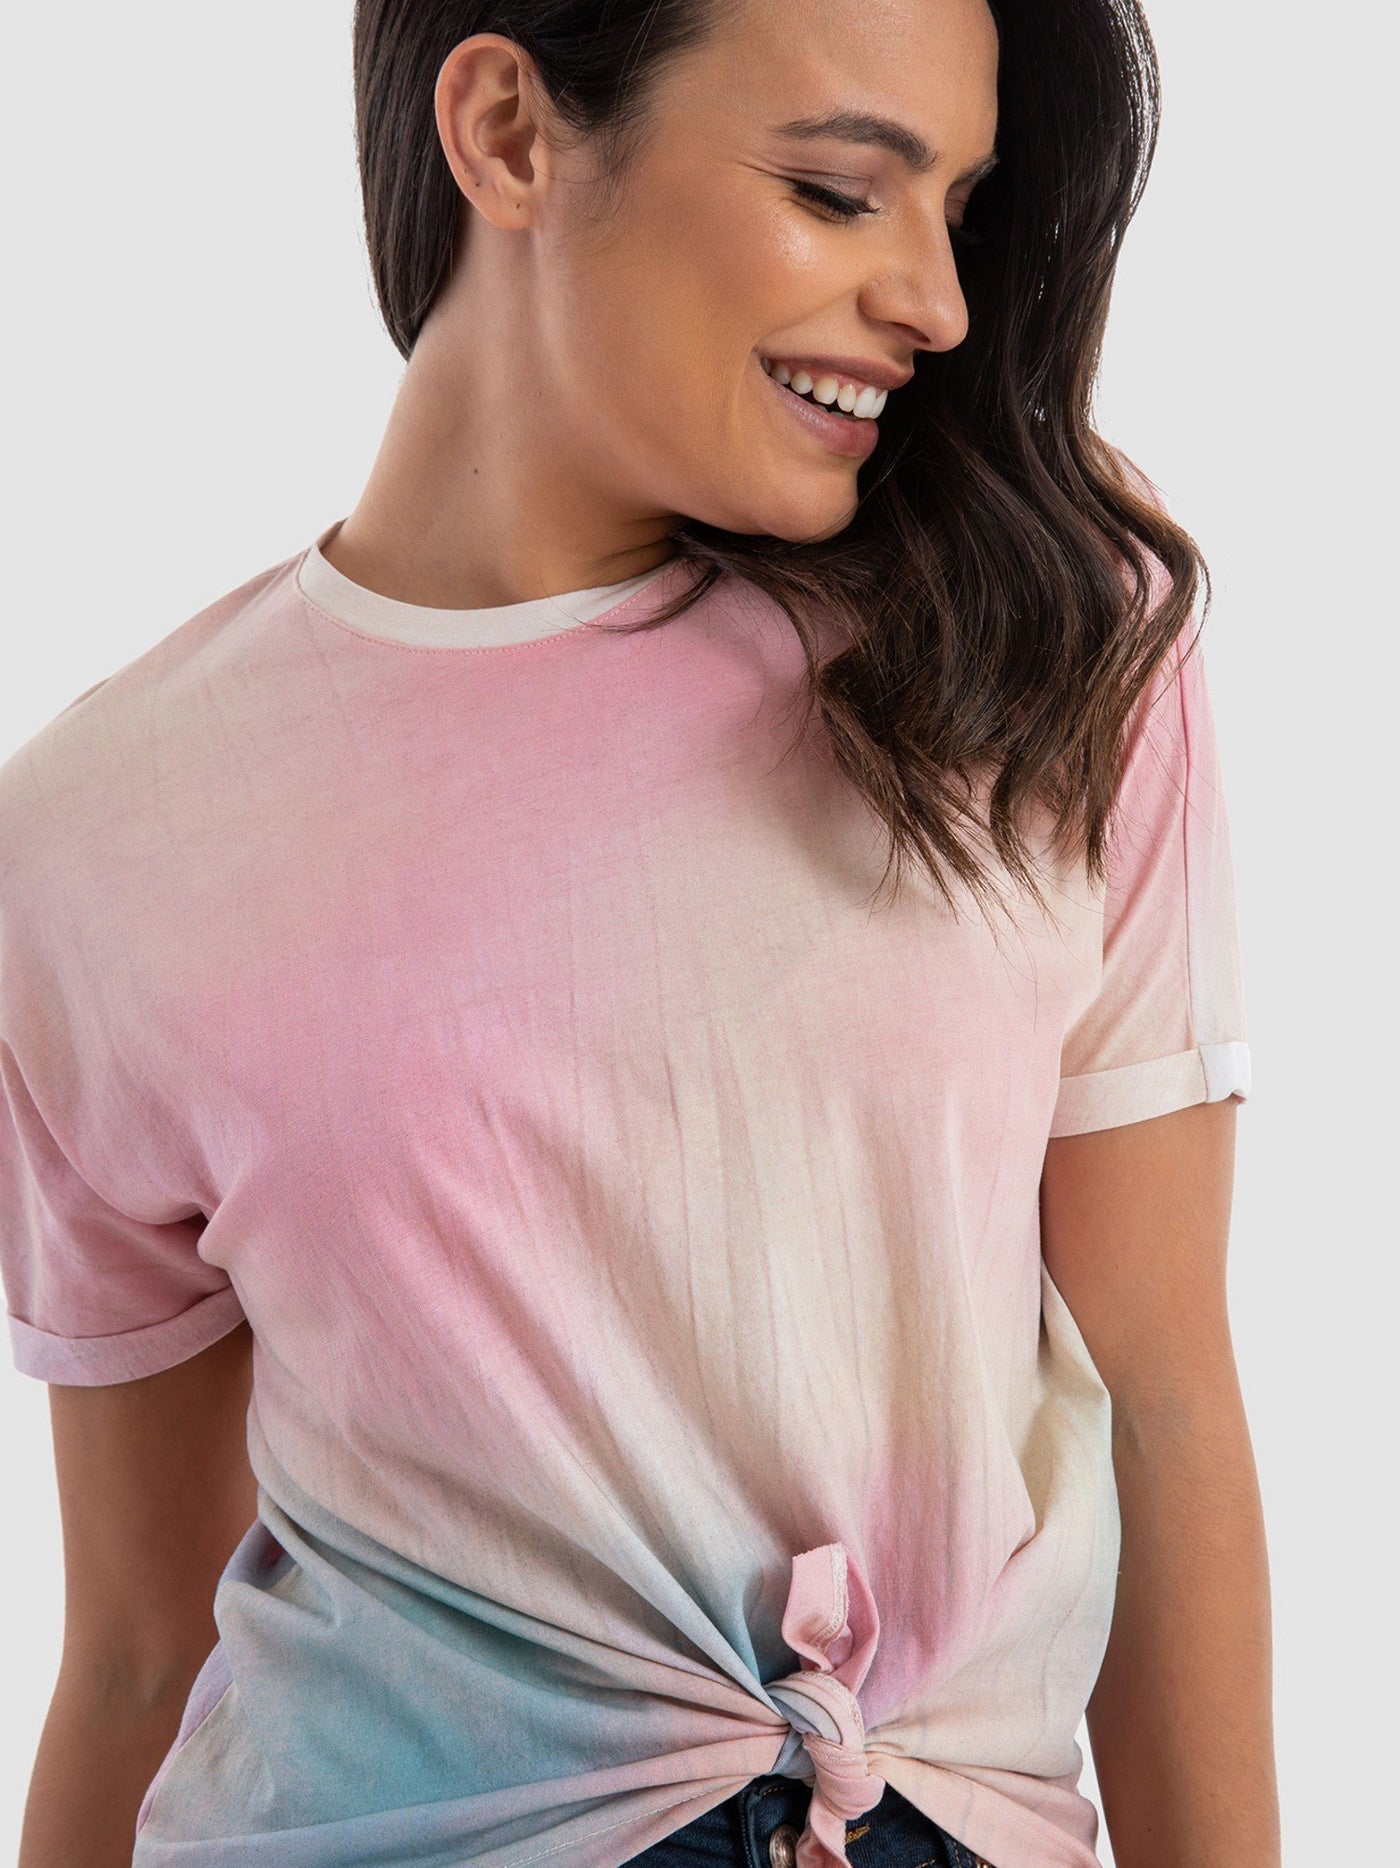 Premoda Womens Tye-Dye T-Shirt